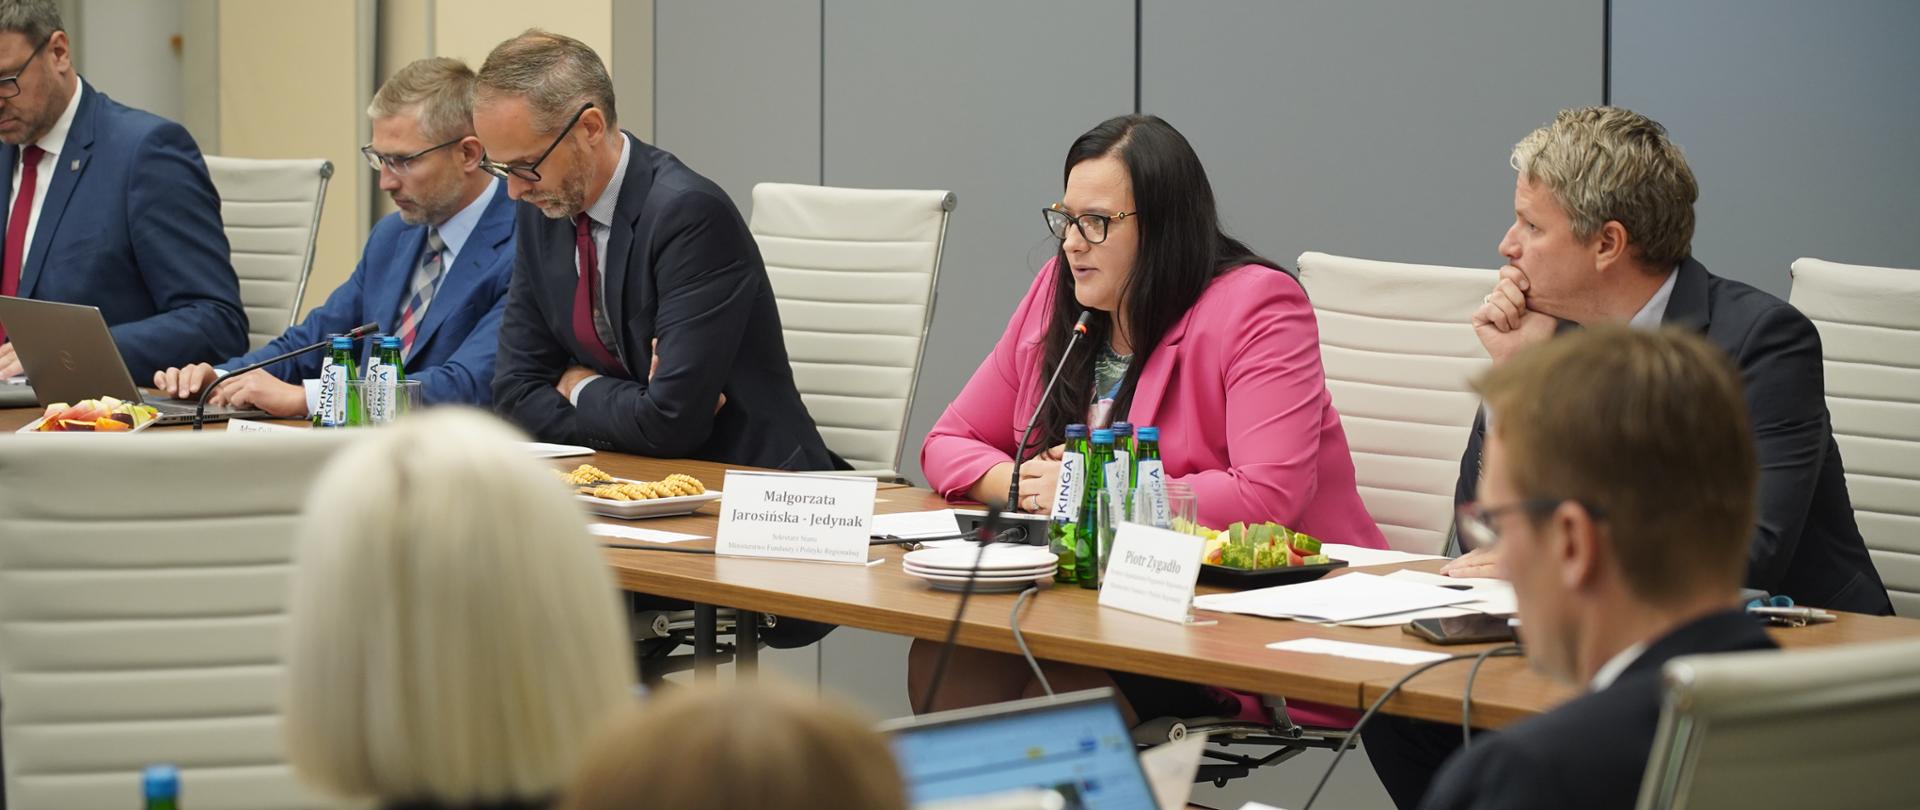 Grupa osób w sali konferencyjnej siedzi przy stołach. Wśród nich wiceminister Małgorzata Jarosińska-Jedynak.